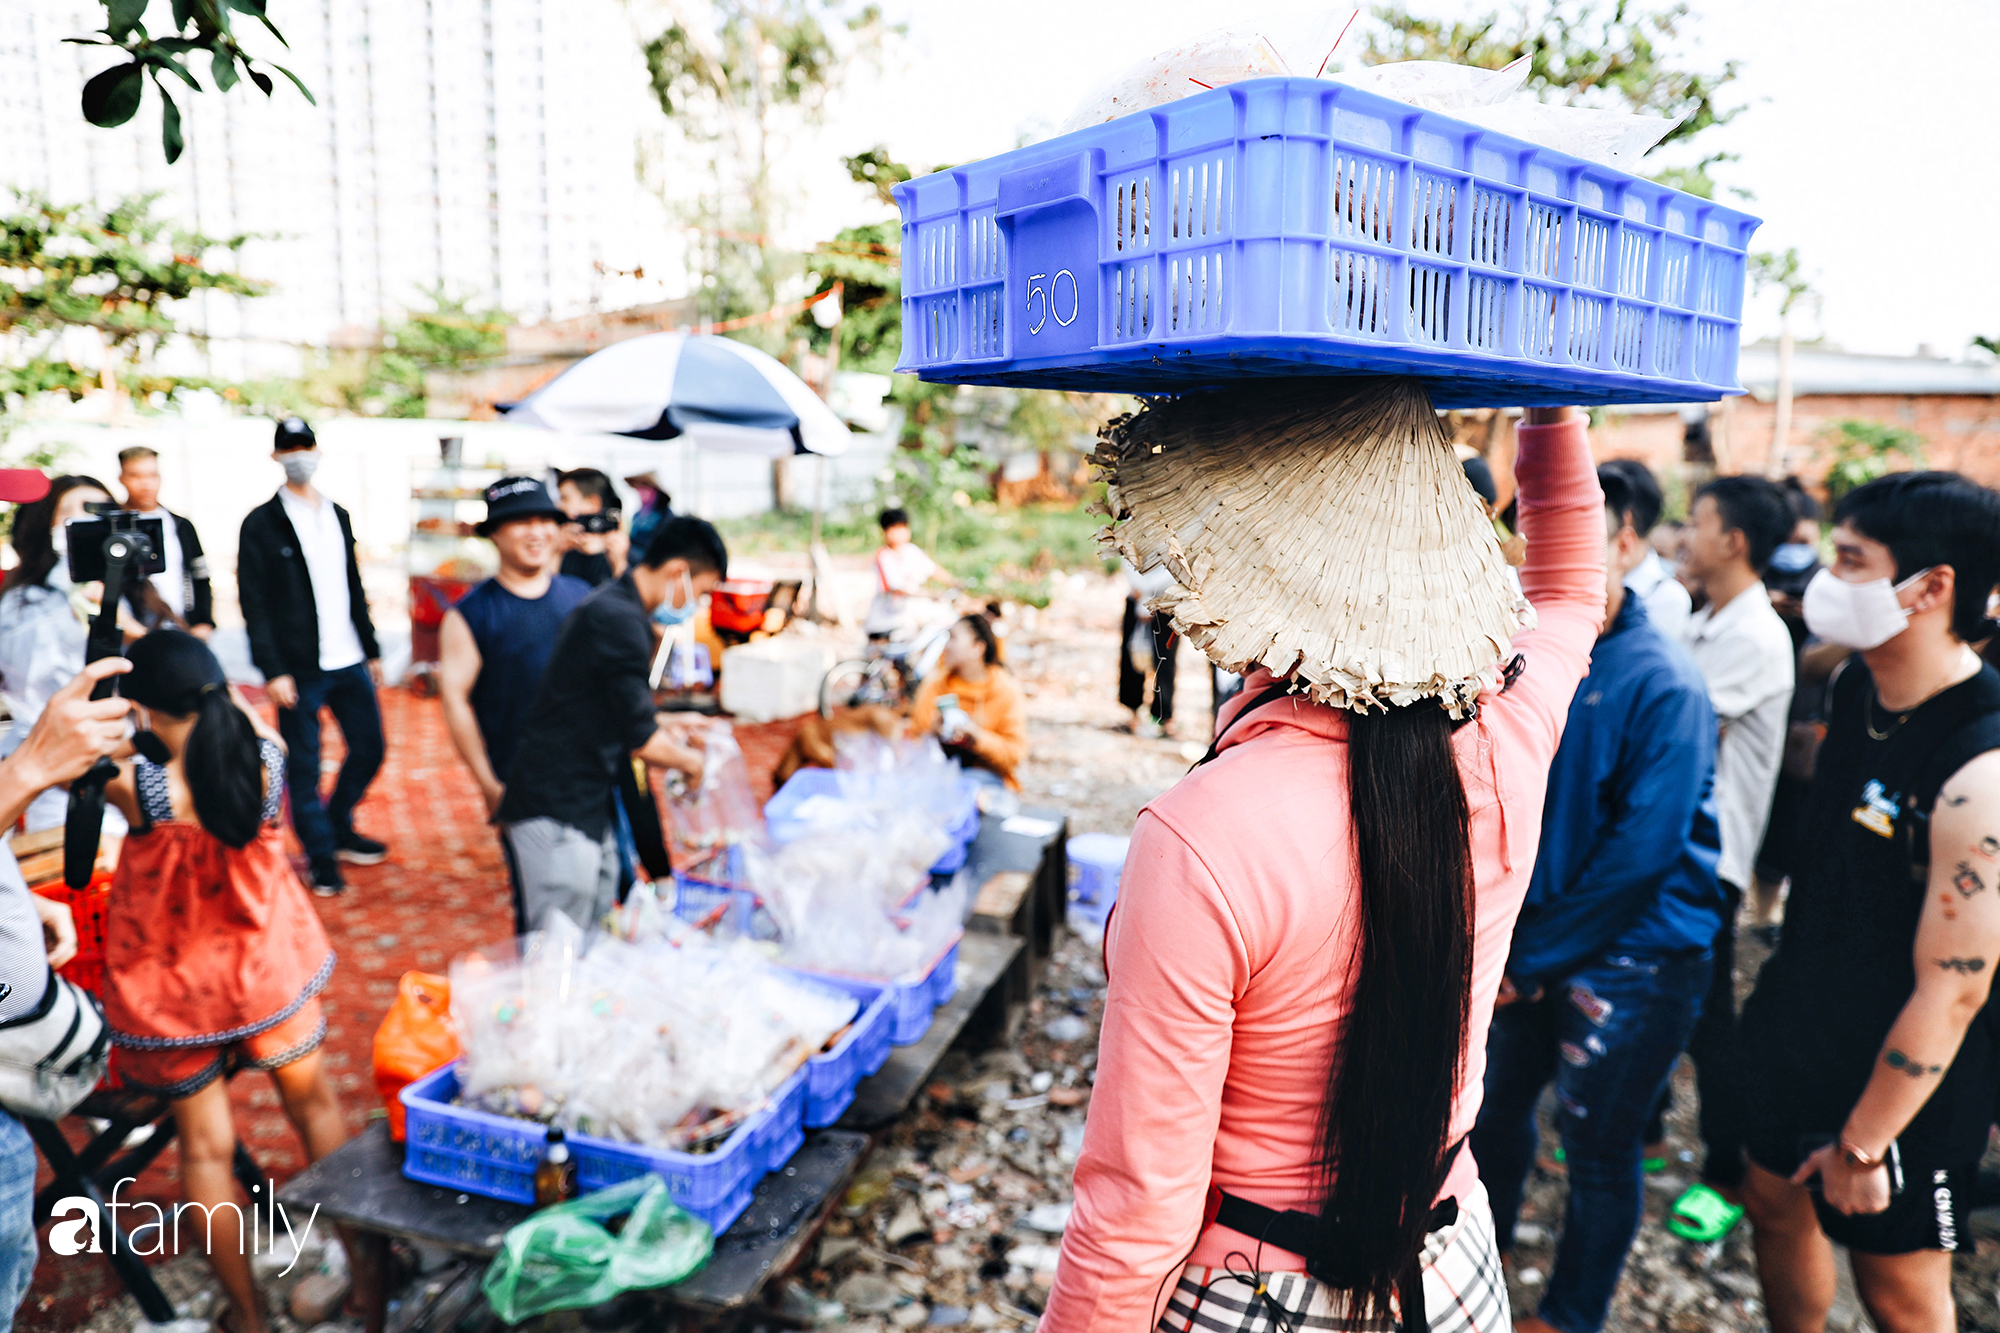 Cát Thy - Nhờ cái miệng quá duyên mà trở thành &quot;Diva&quot; với hàng bánh tráng trộn nổi nhất Sài Gòn, mỗi ngày có hàng trăm người đến tìm để quay hình, chụp ảnh - Ảnh 14.